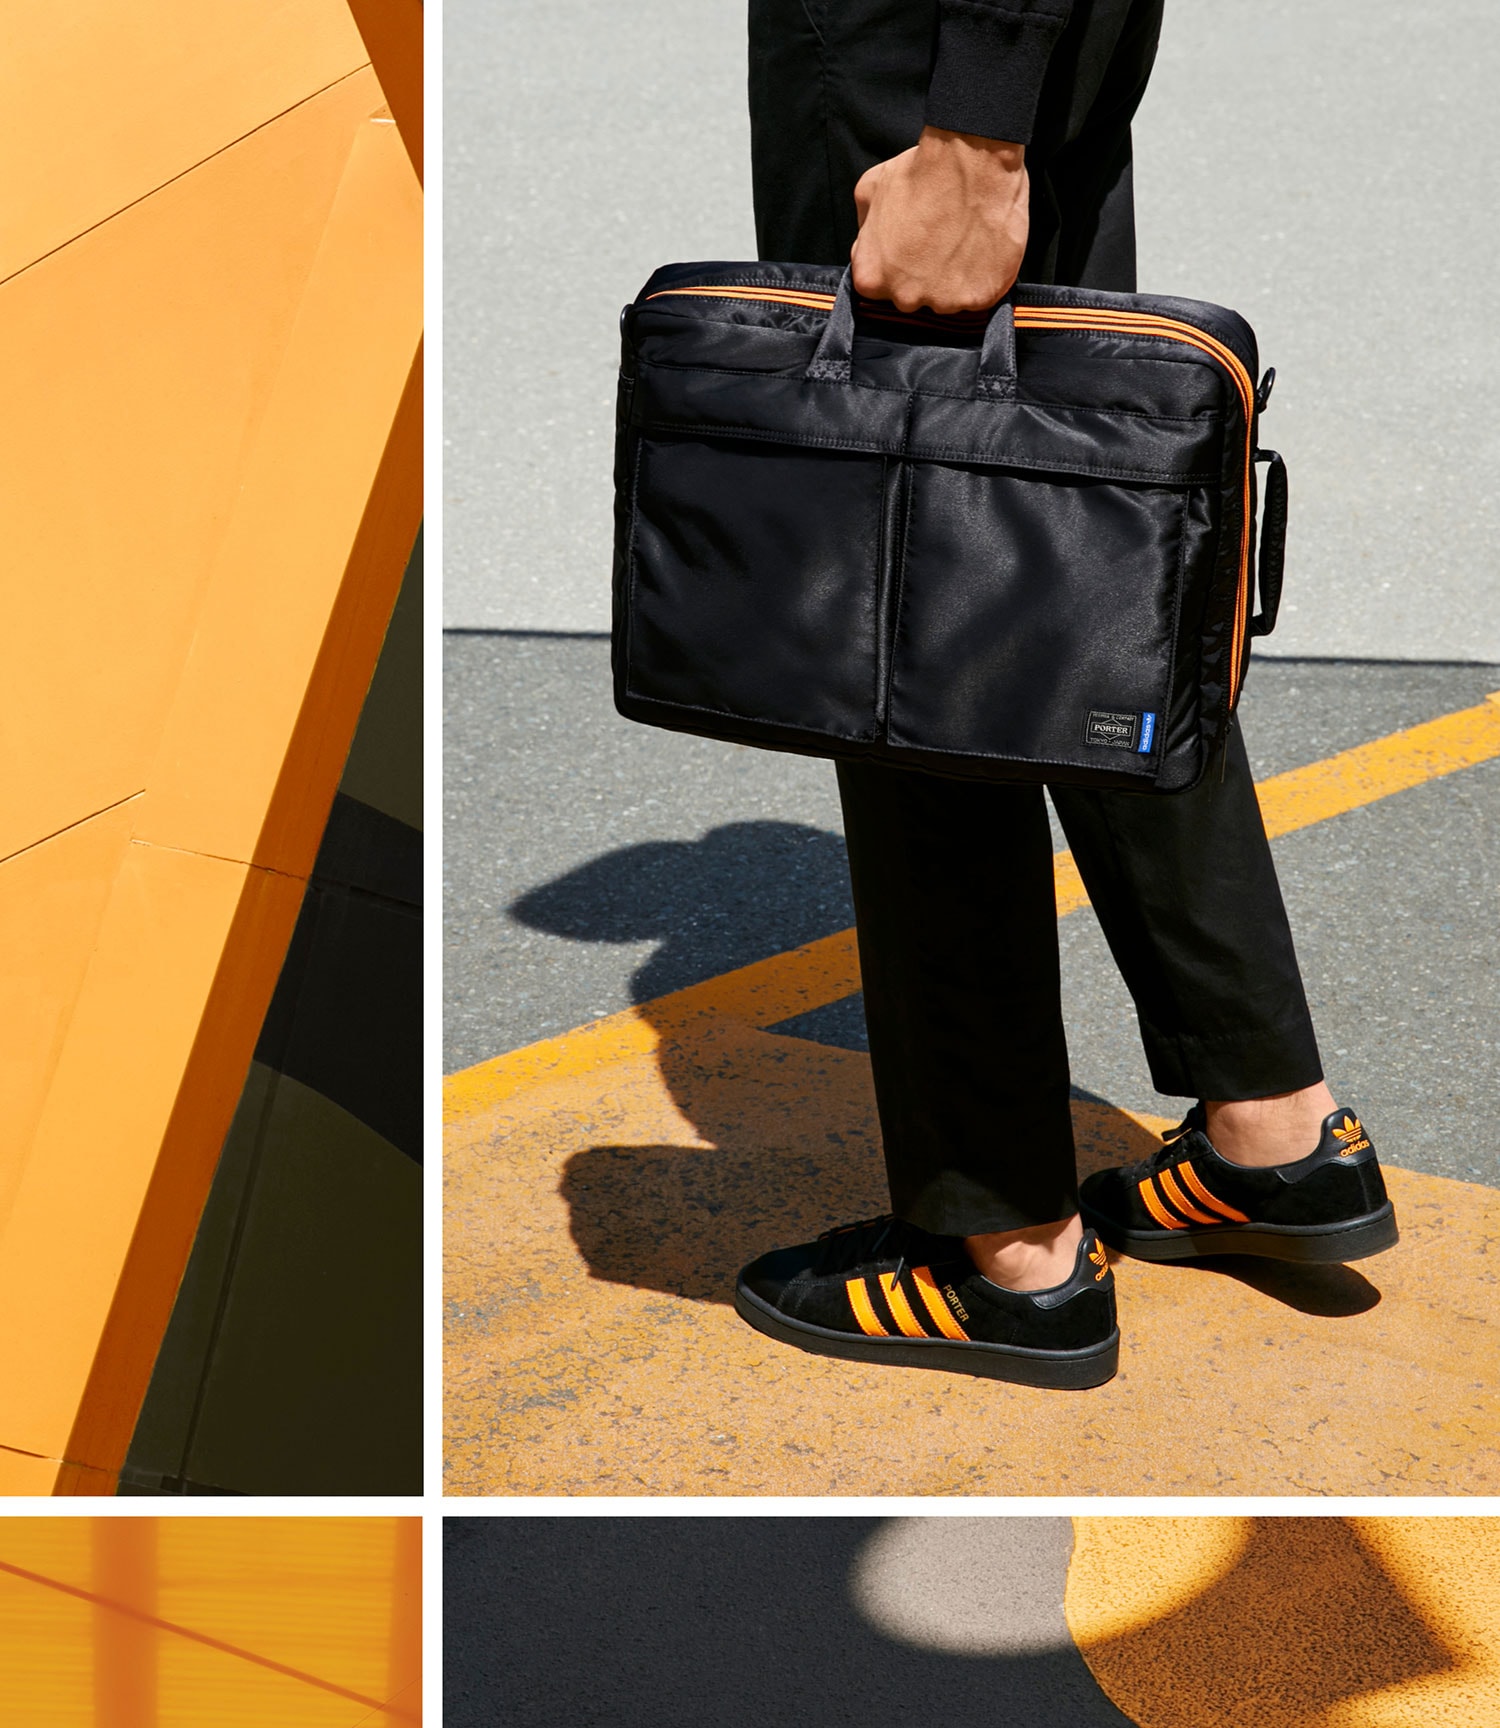 포터 x 아디다스 오리지널스 2018 봄, 여름 협업 룩북 & 제품군 porter adidas originals spring summer